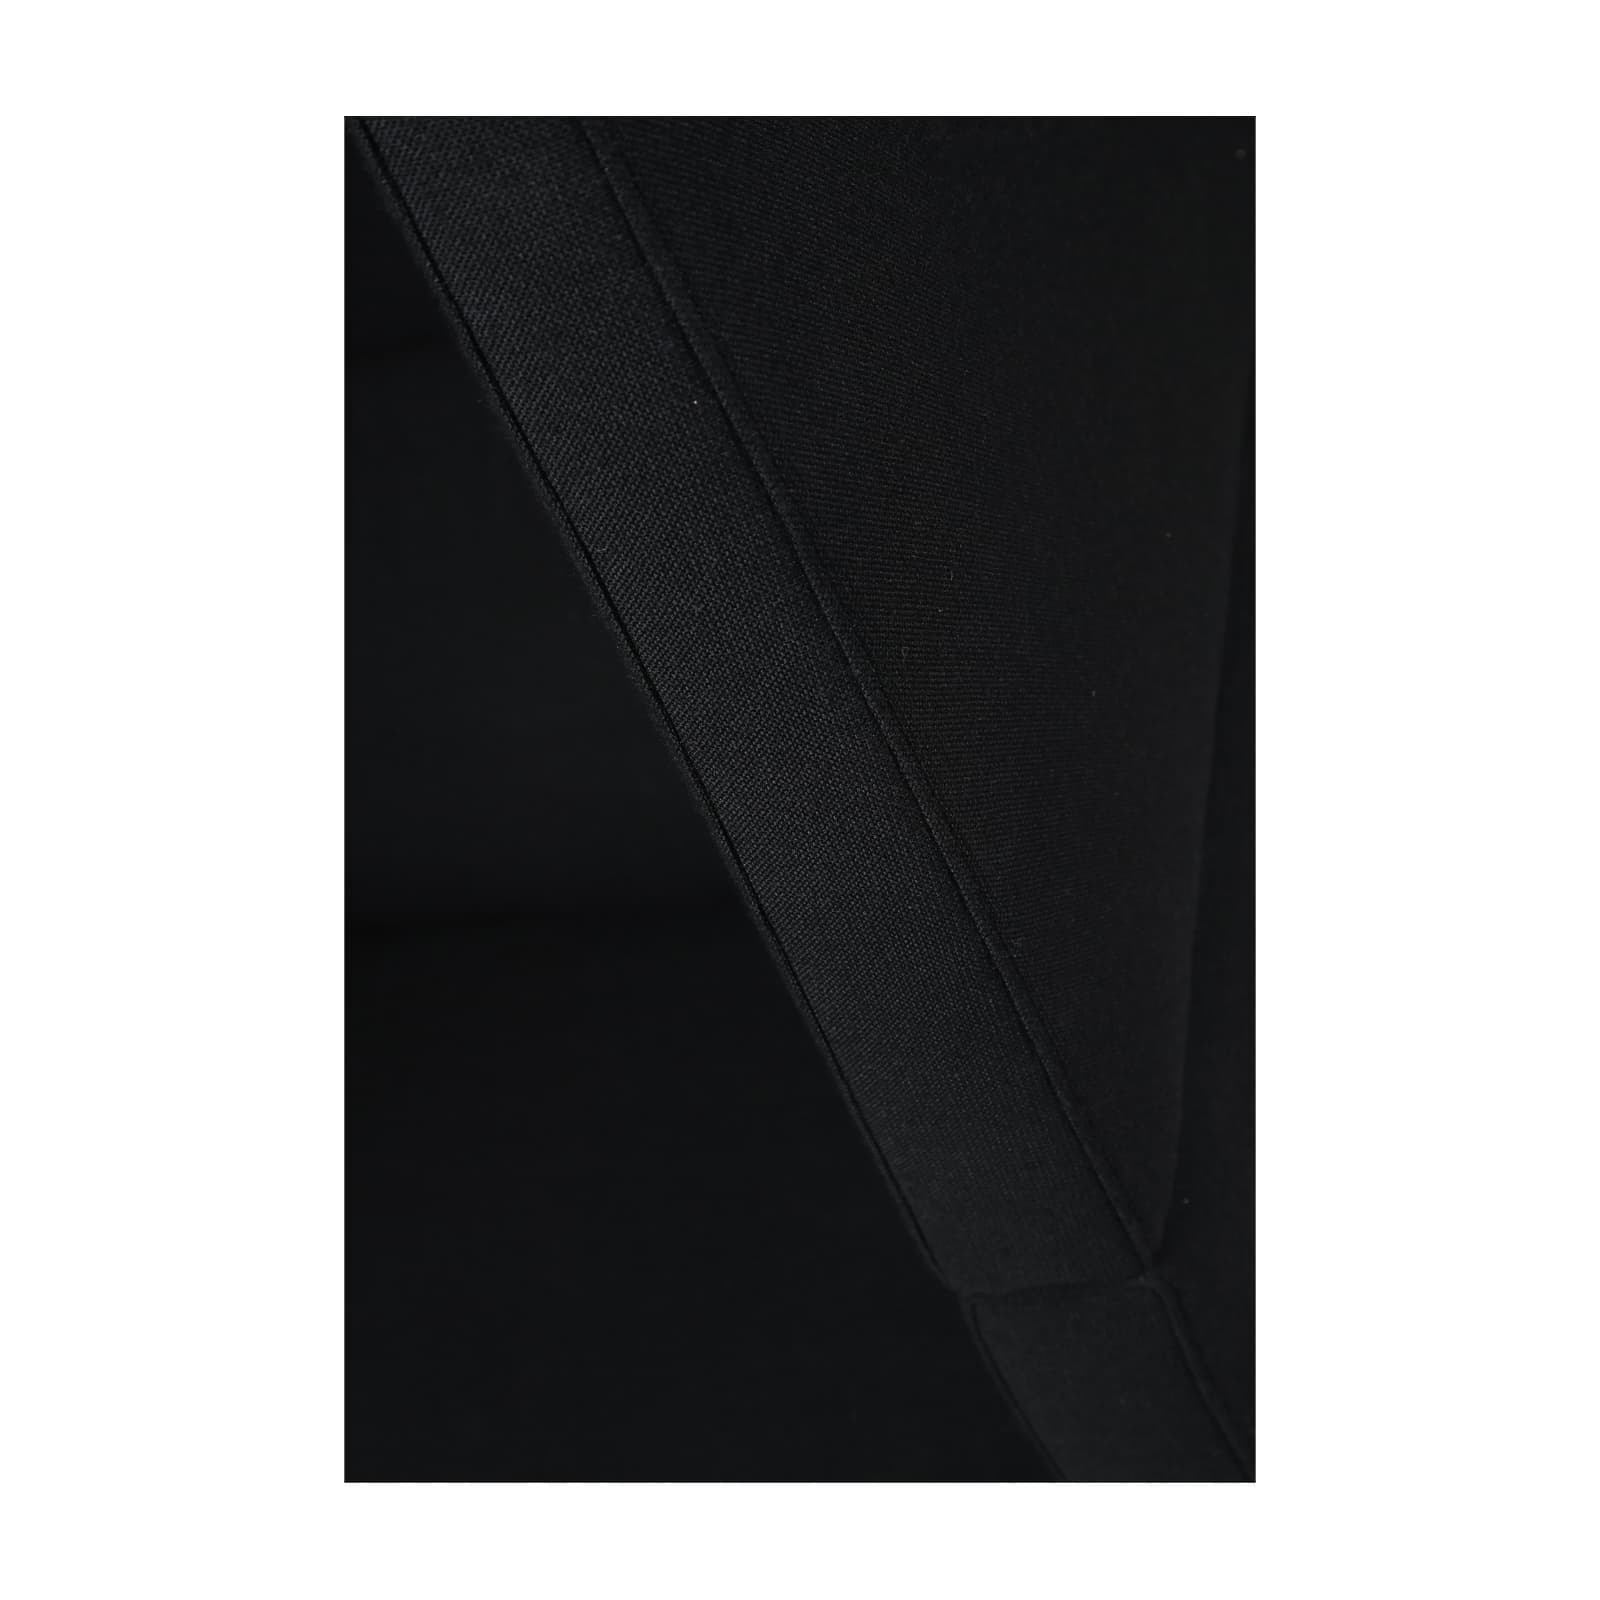 Fauteuil individuel intimité Sedus occasion - Noir - 136 x 80 x 90 cm-Bluedigo